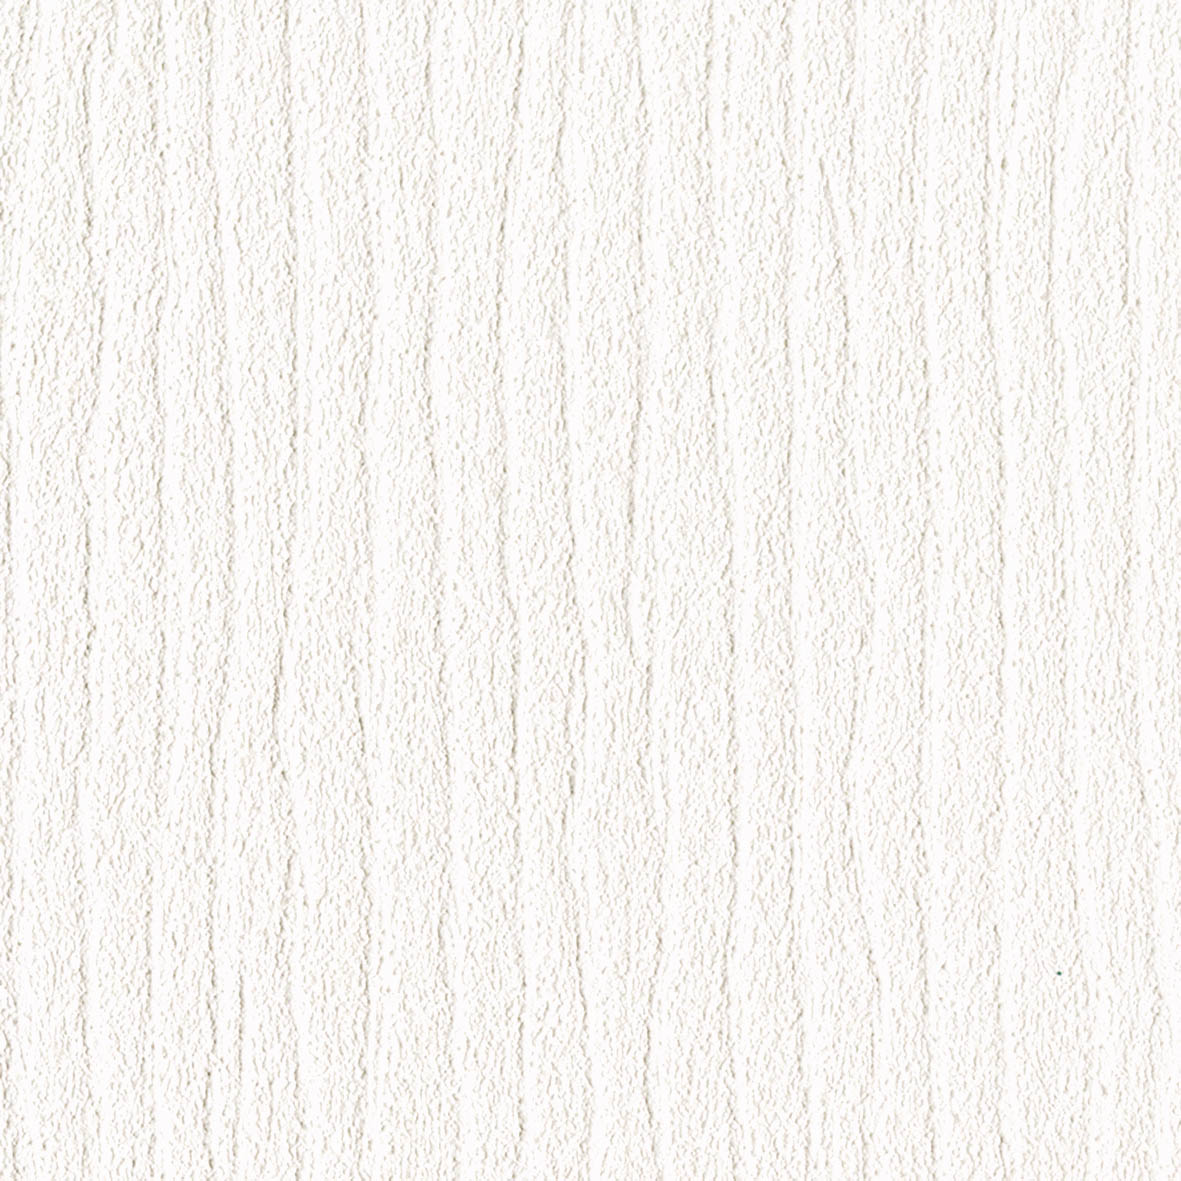 【のり付き】 LV-3049 リリカラ 壁紙/クロス 切売 リリカラ のり付き壁紙/クロス